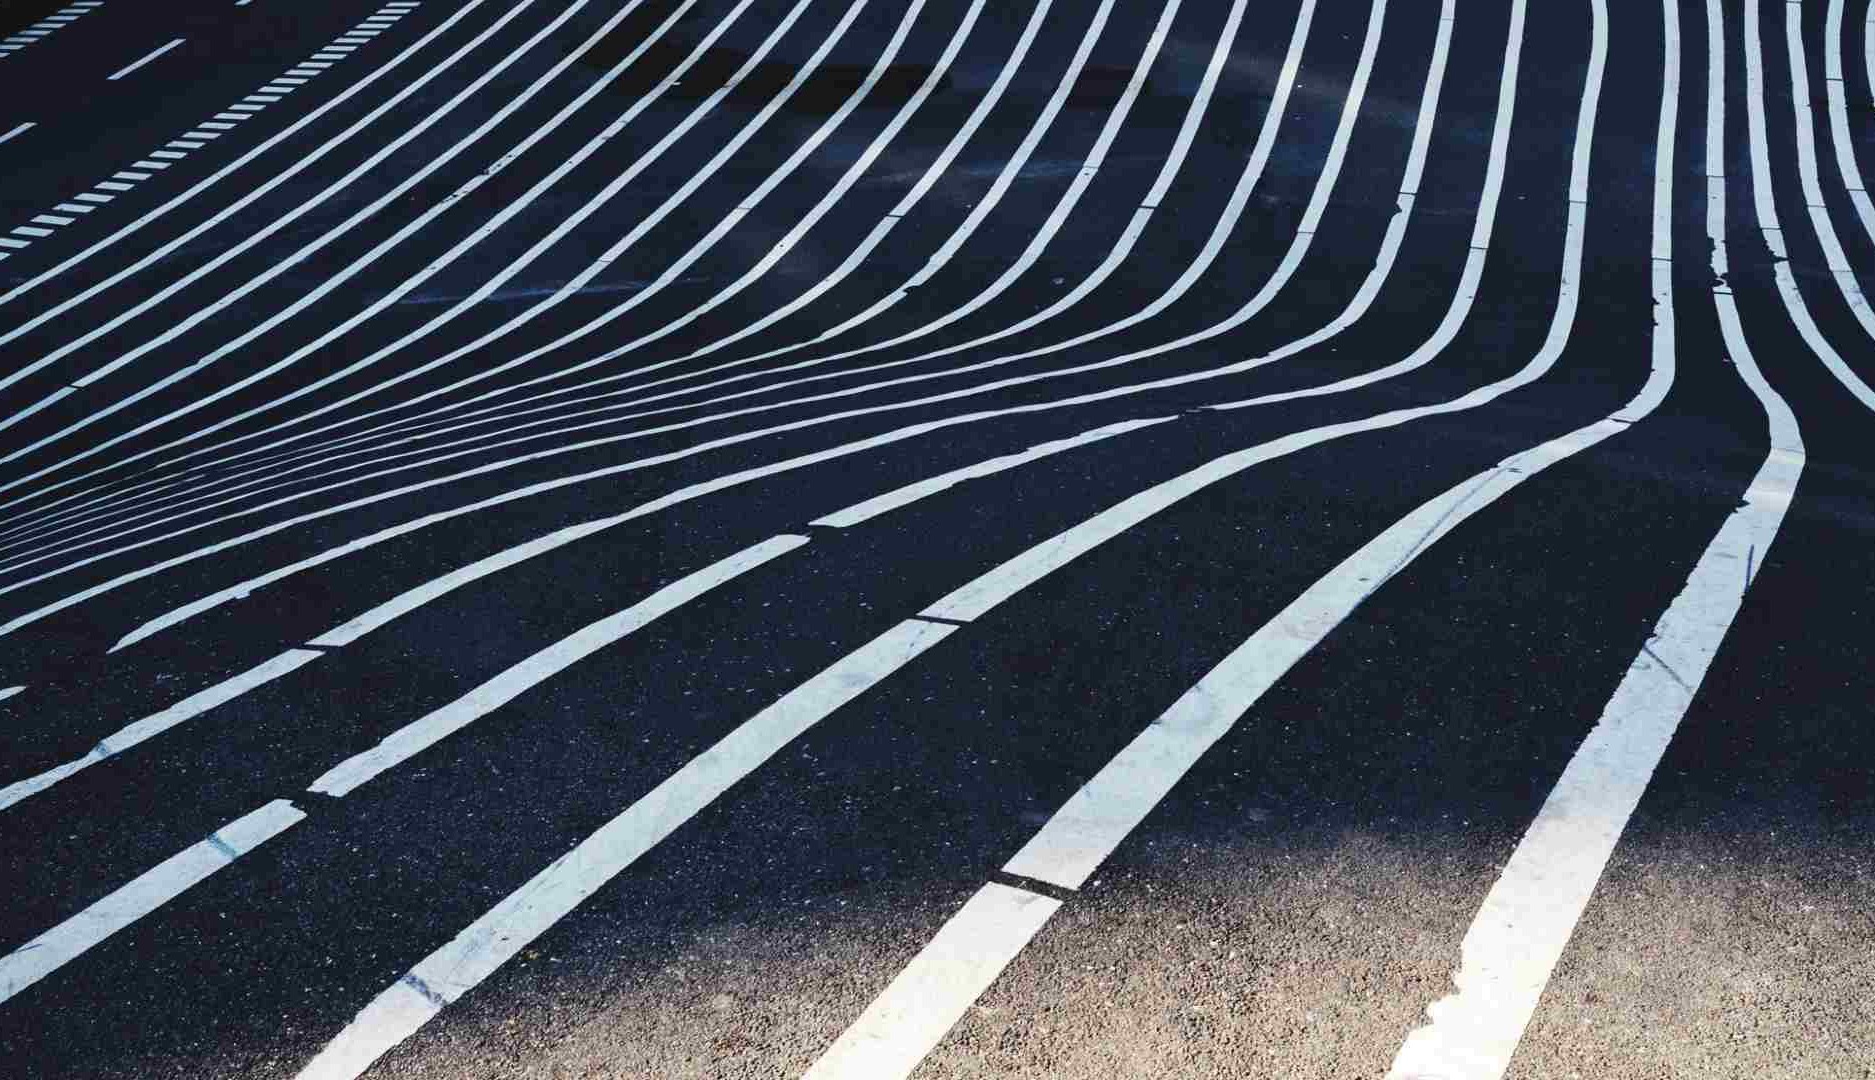 Lineas de carretera paralelas